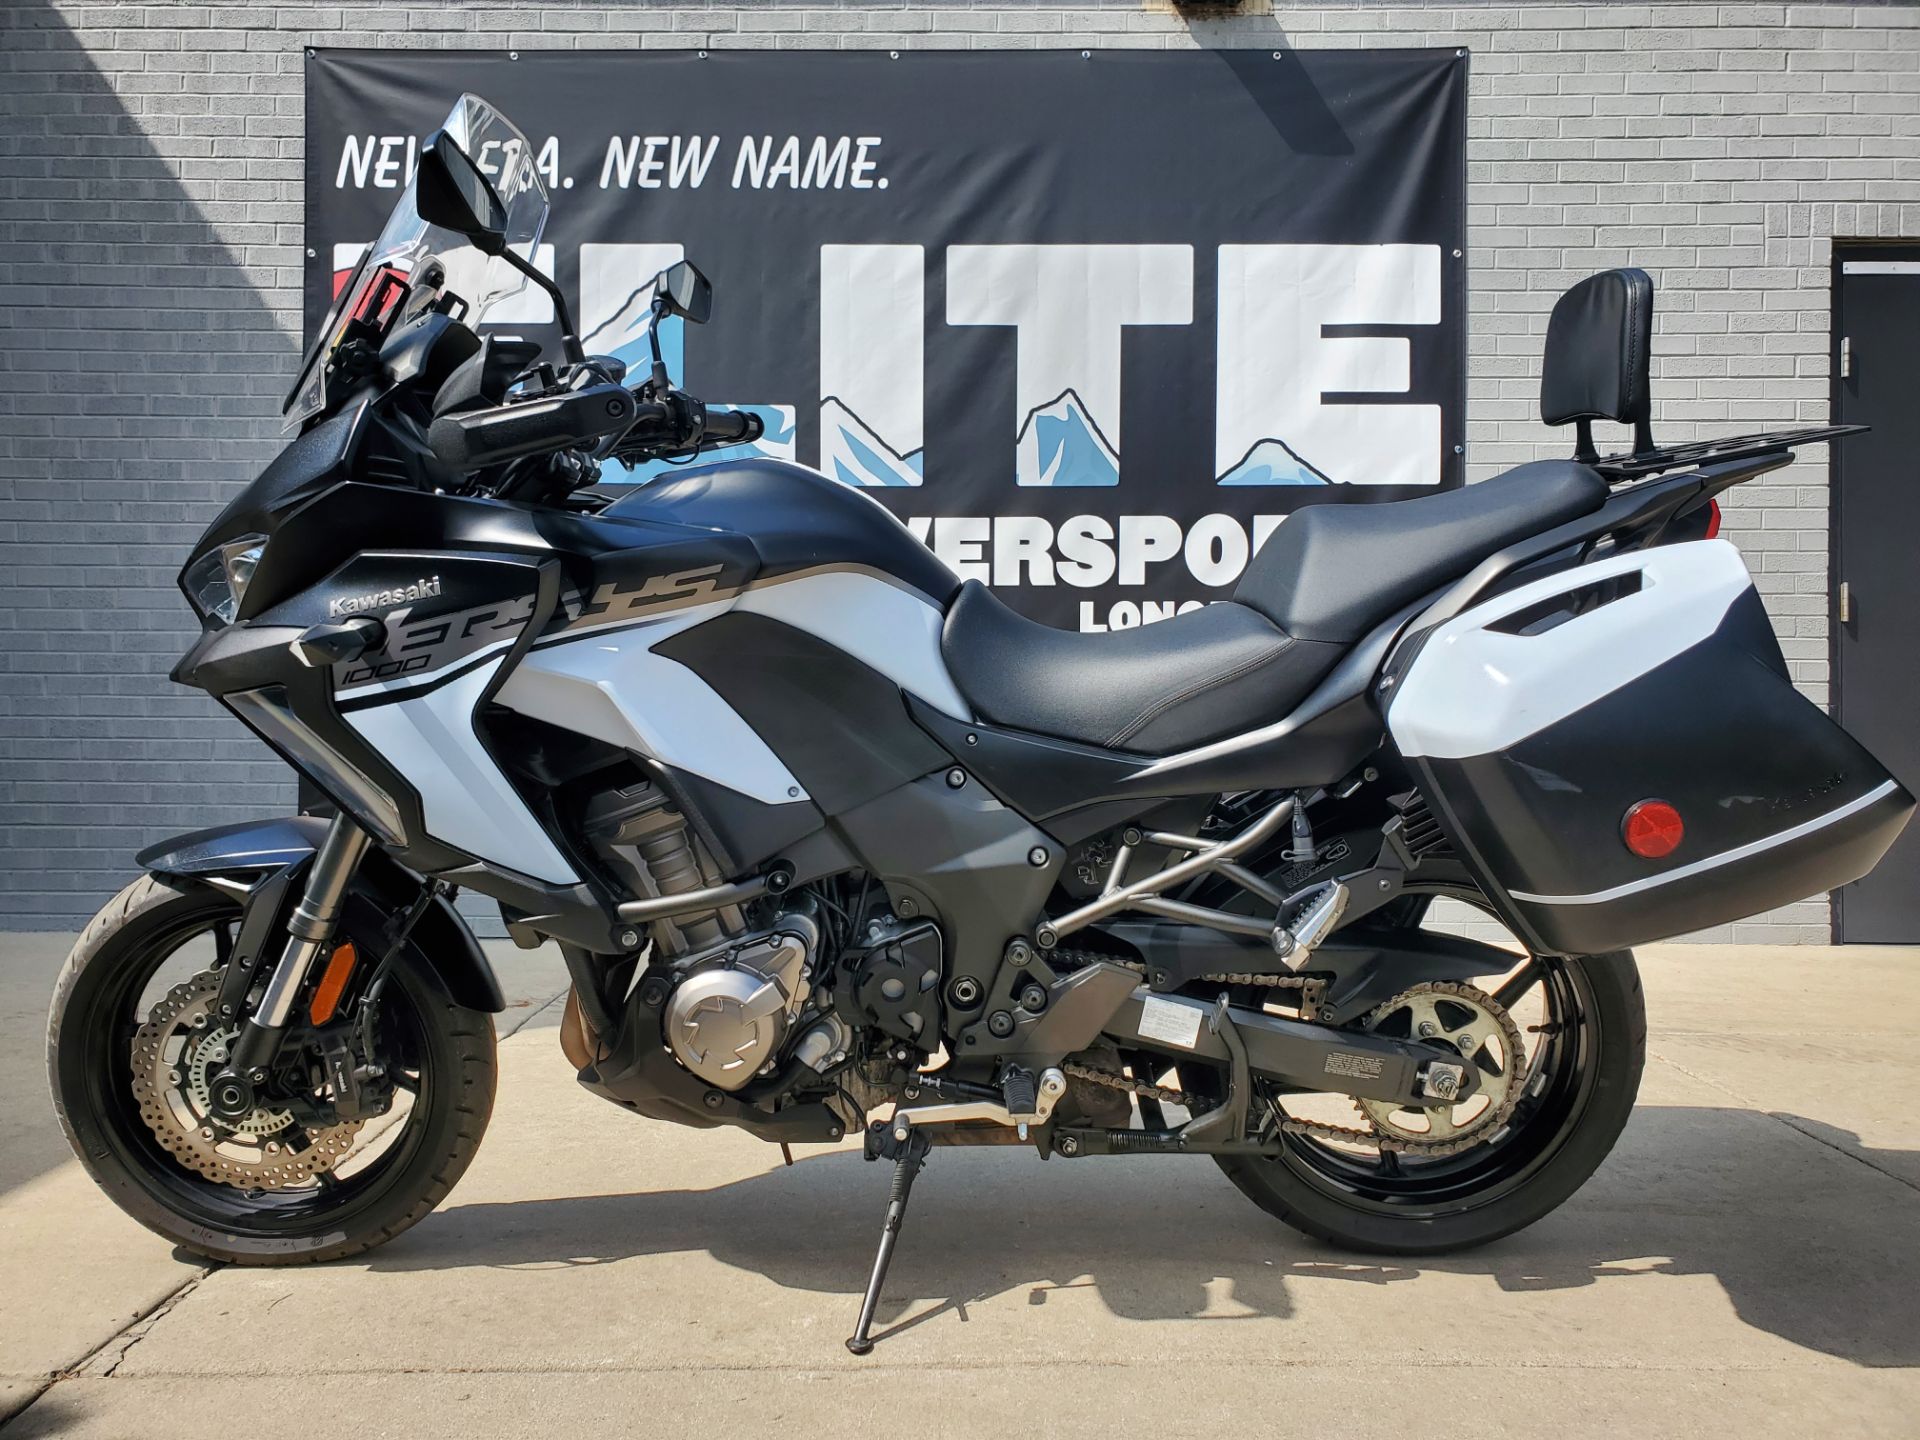 2019 Kawasaki Versys 1000 SE LT+ in Longmont, Colorado - Photo 2